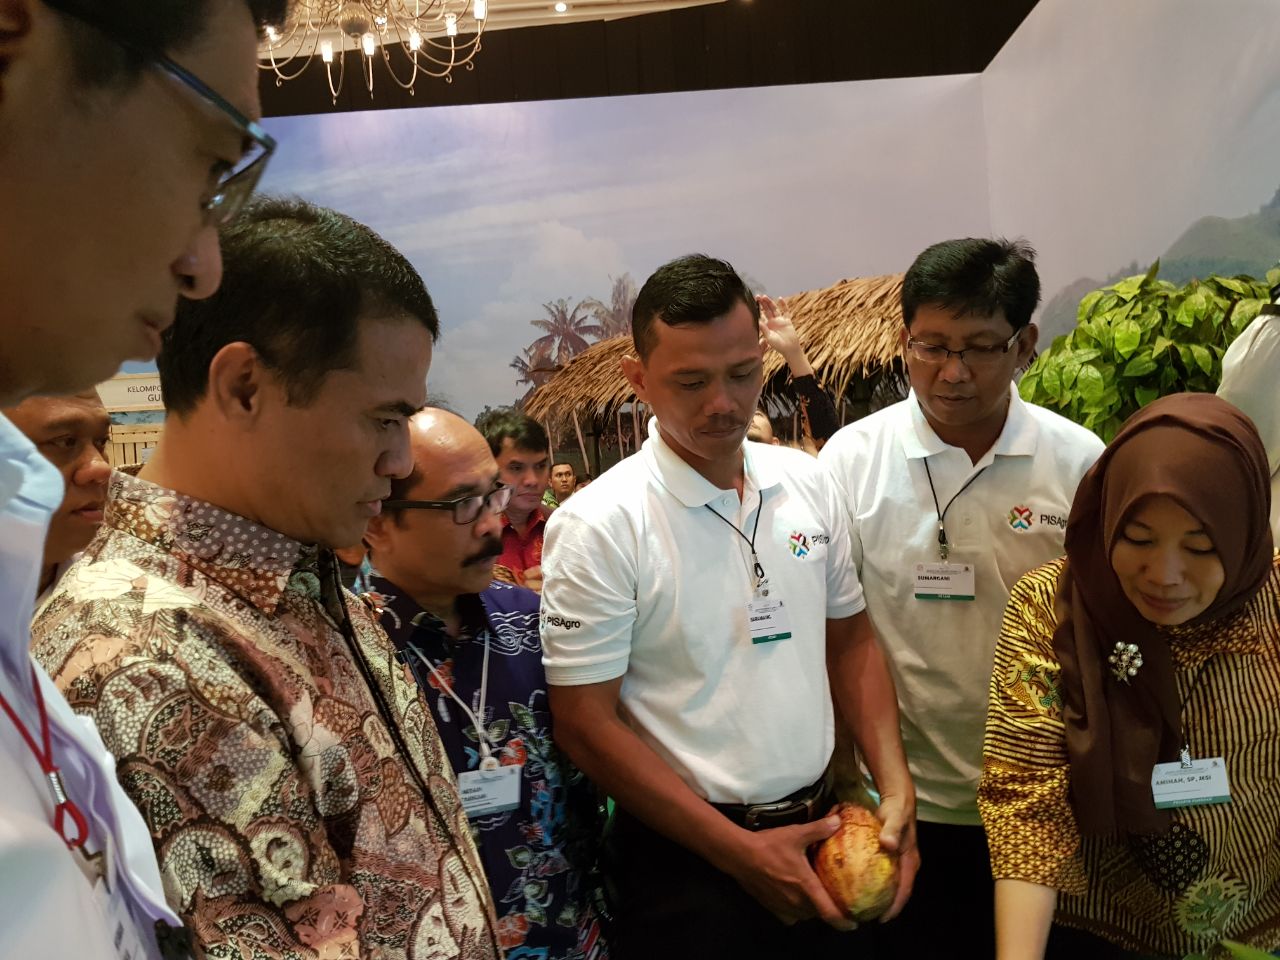 Baramang mewakili petani kakao lain se-Indonesia mengikuti Jakarta Food Security Summit (JFFS) 2018, di Jakarta Convention Center, 8-9 Maret 2018. Ia berkesempatan menjelaskan beragam kondisi dan masalah yang dihadapi kakao kepada Menteri Pertanian, Andi Amran Sulaiman | Foto: Moh. Khomeiny/MARS Indonesia.